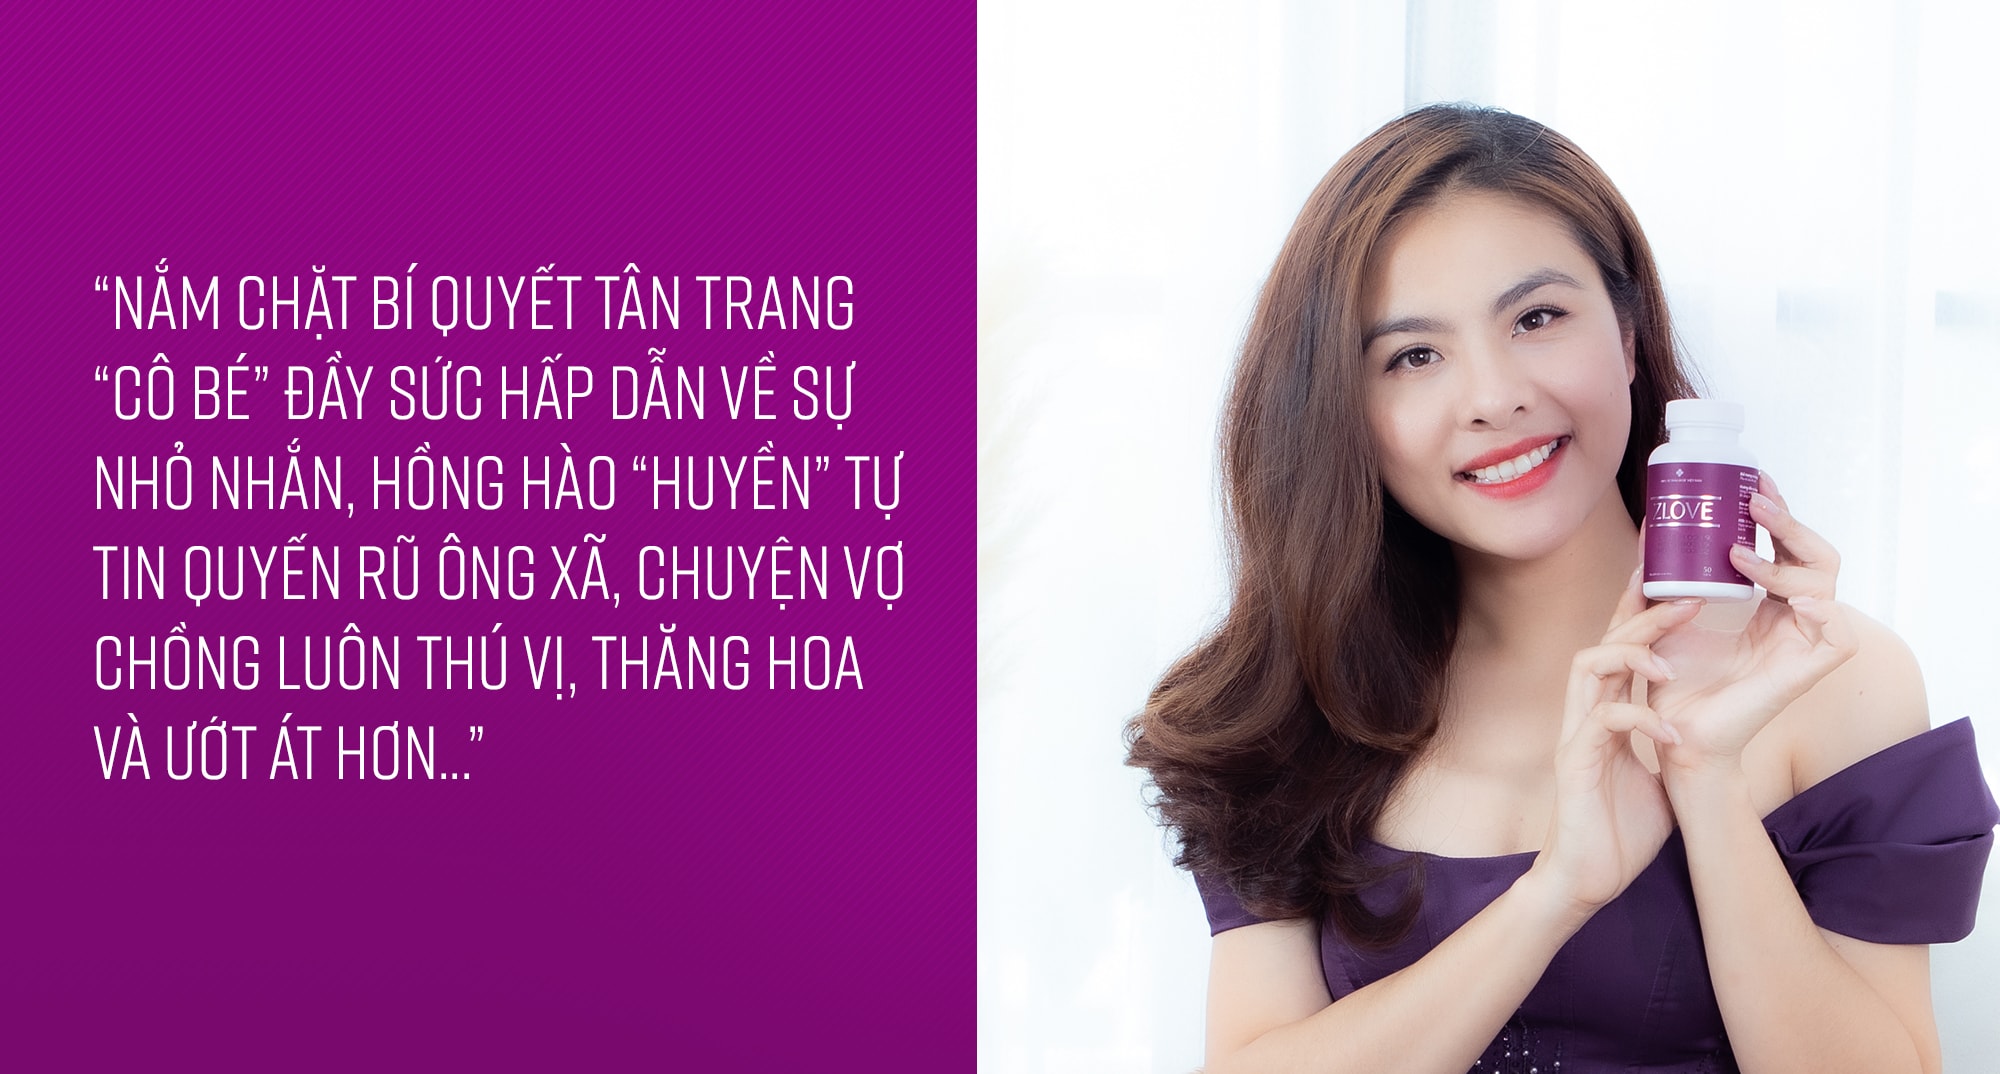 Diễn viên Vân Trang chia sẻ sản phẩm zlove